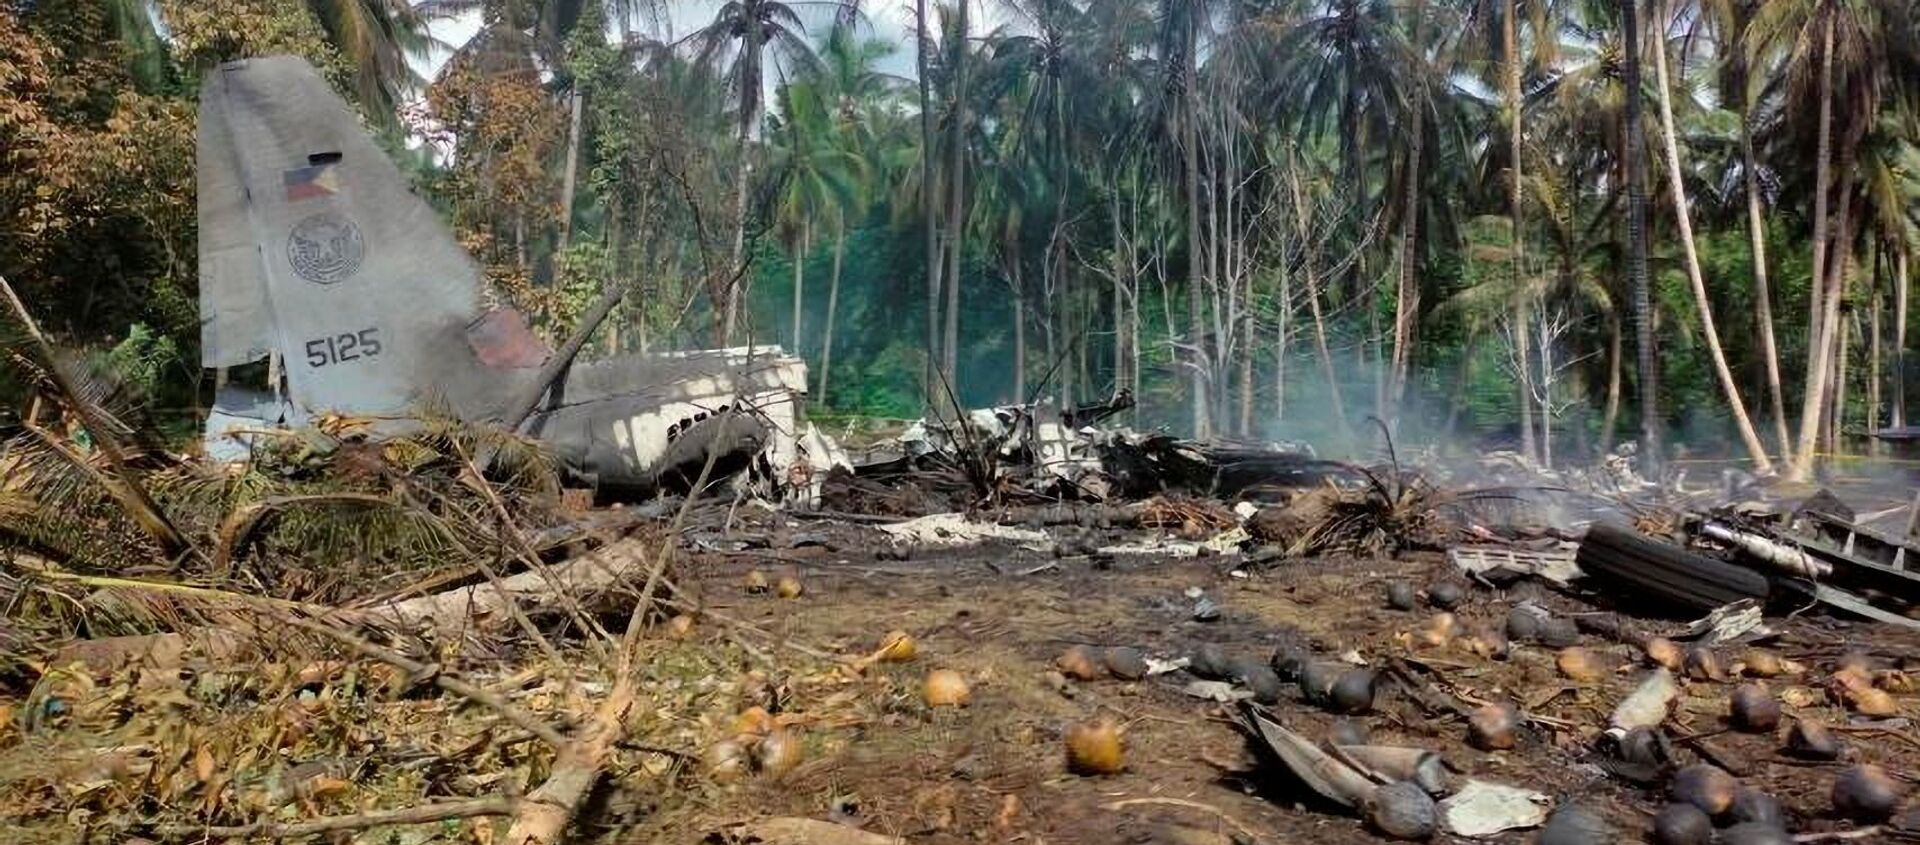 Hiện trường vụ tai nạn máy bay C-130 của Không quân Philippines - Sputnik Việt Nam, 1920, 05.07.2021